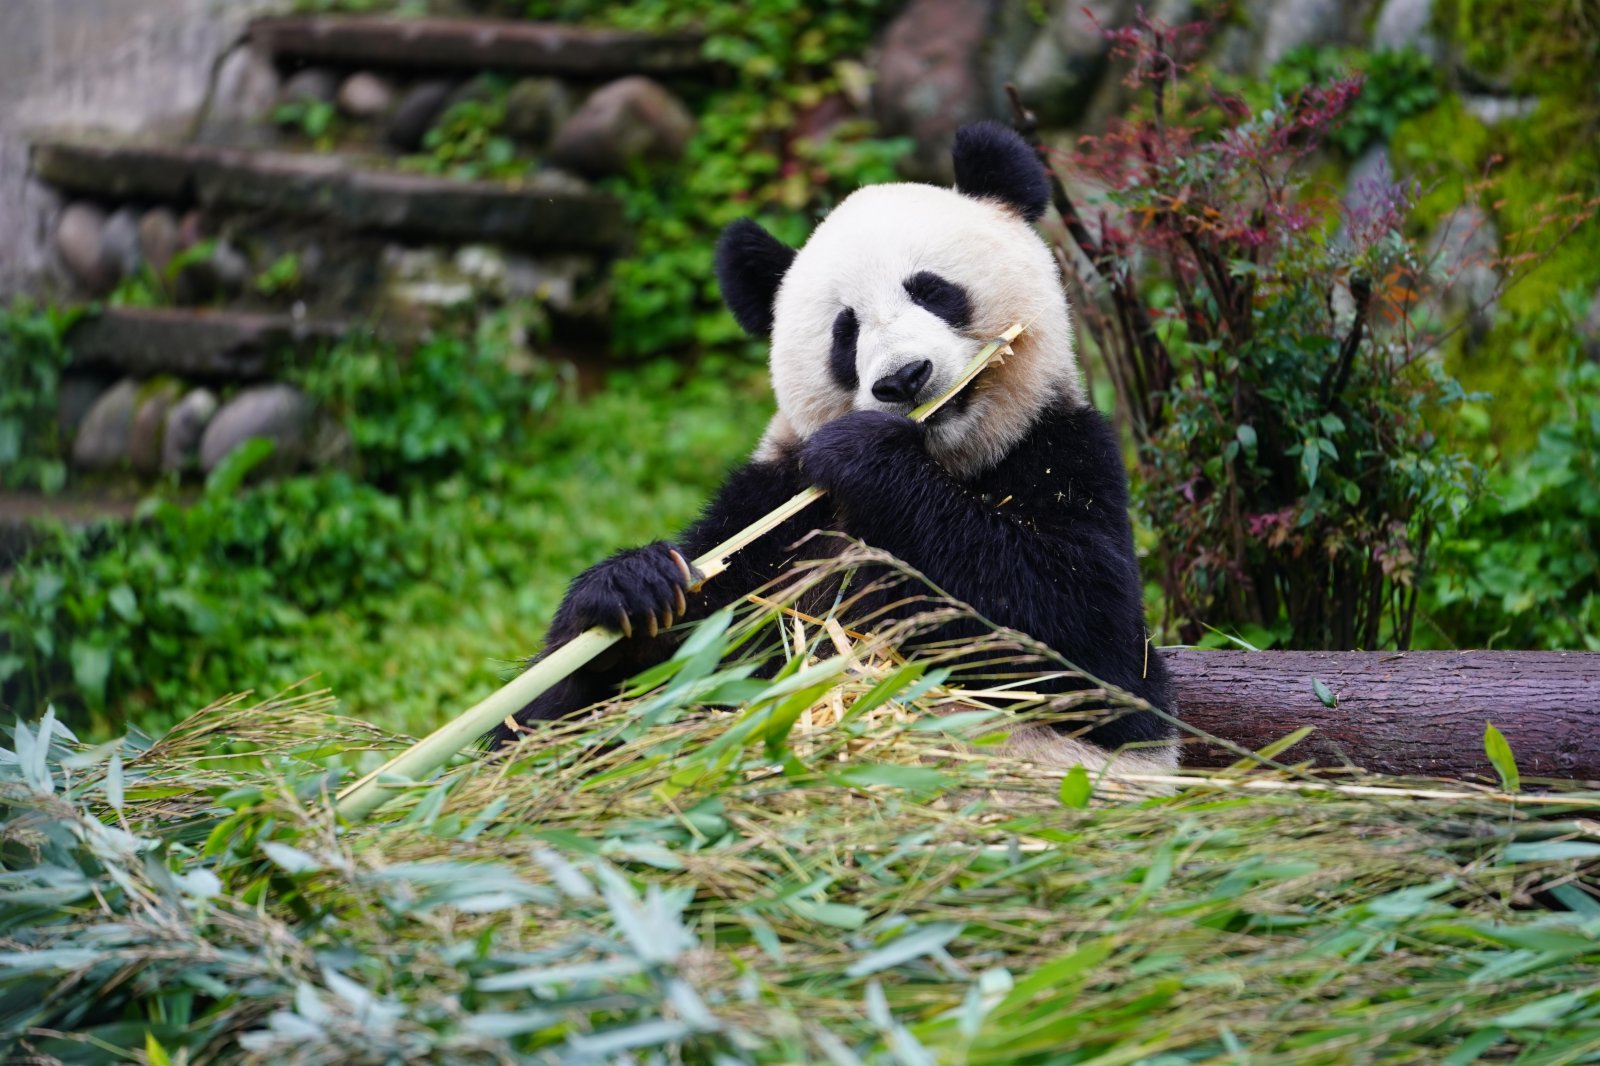 這是5月15日在中國大熊貓保護研究中心雅安碧峰峽基地拍攝的大熊貓。